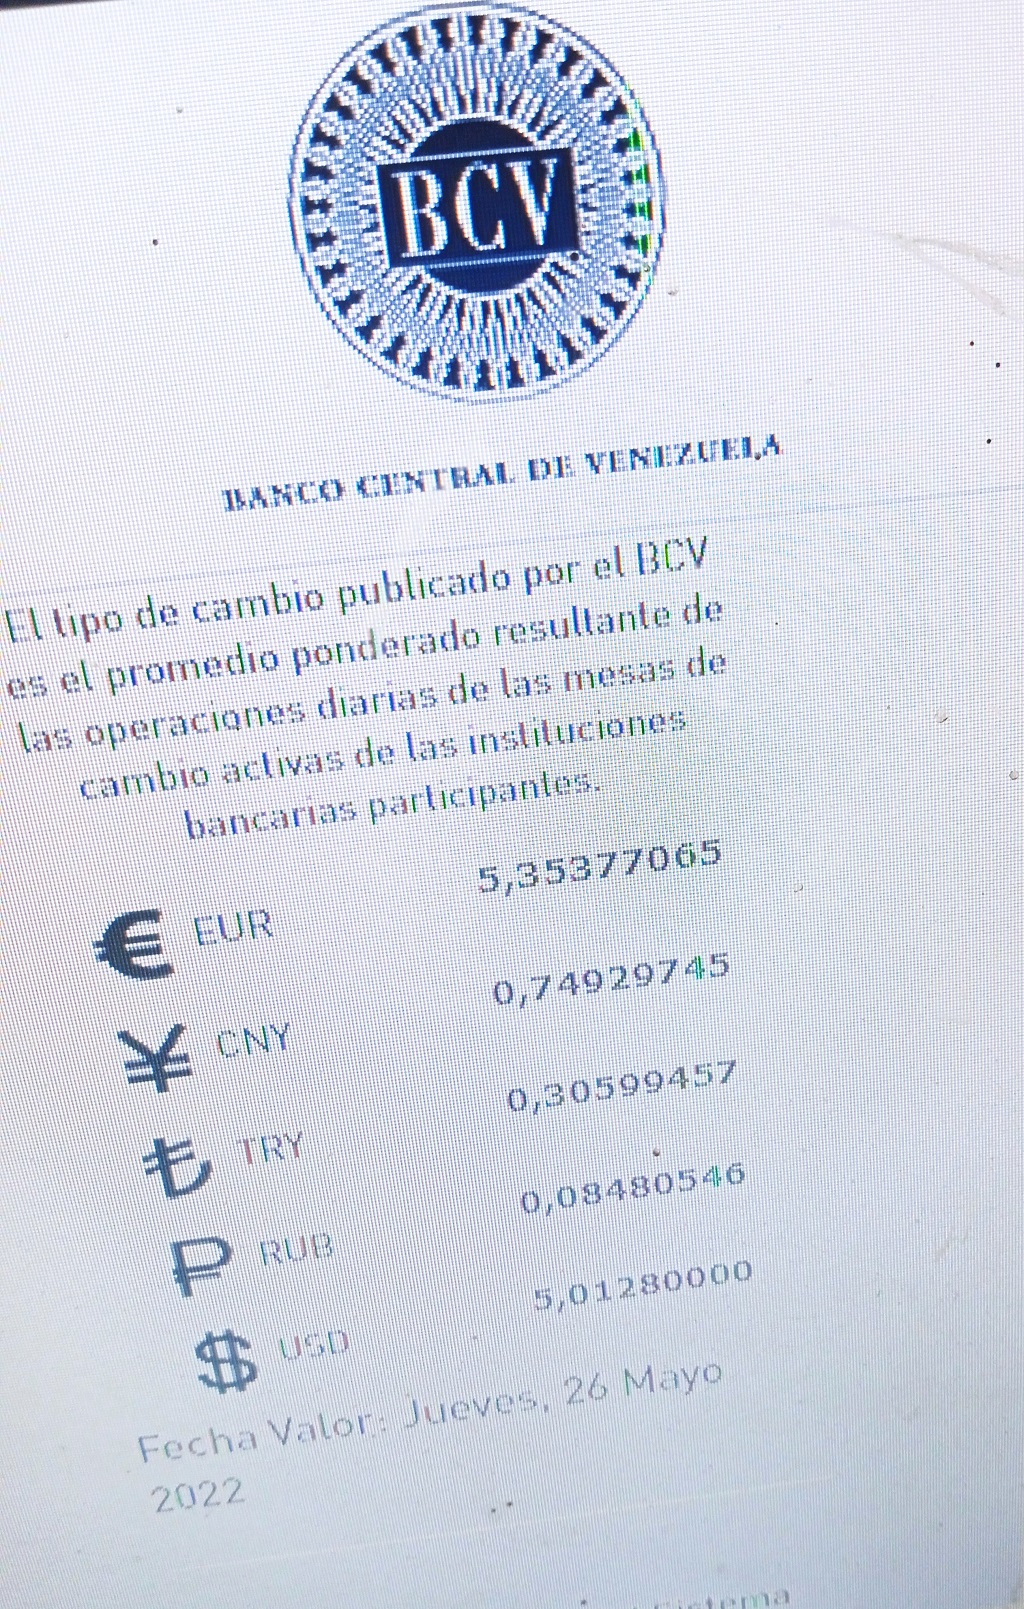 Dólar oficial pasó los 5 bolívares - noticiacn